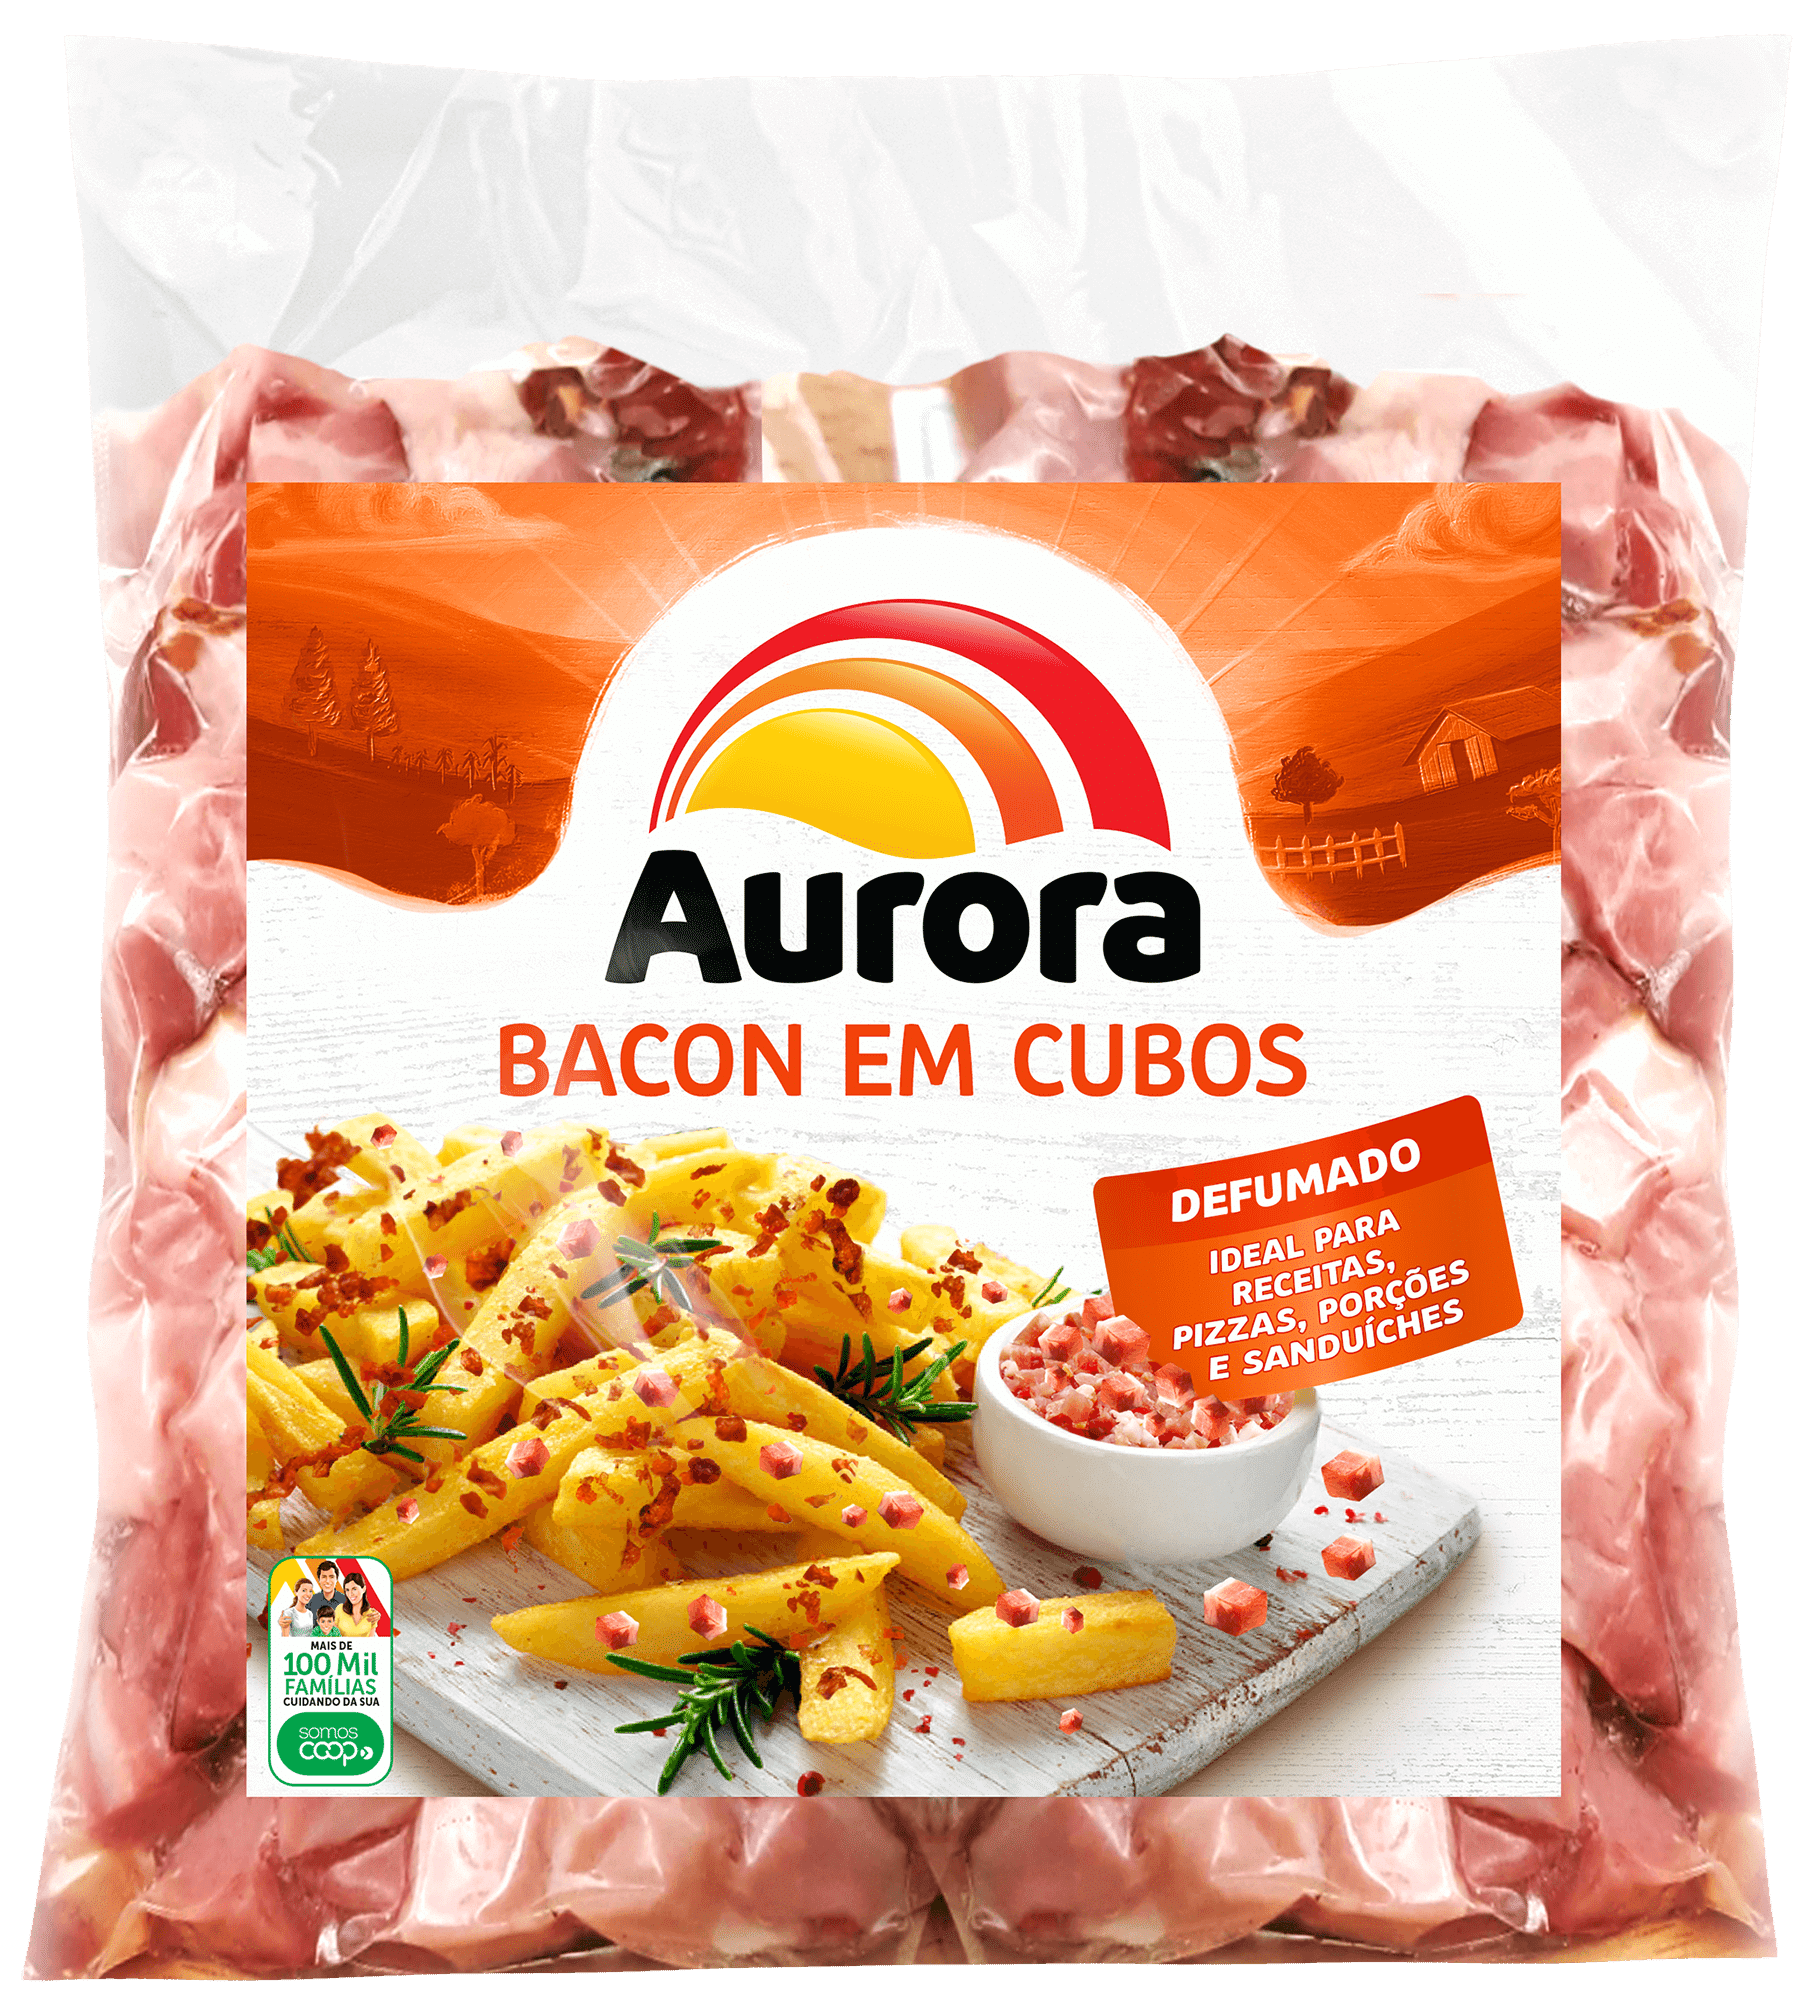 331 - Bacon Em Cubos Aurora 1kg